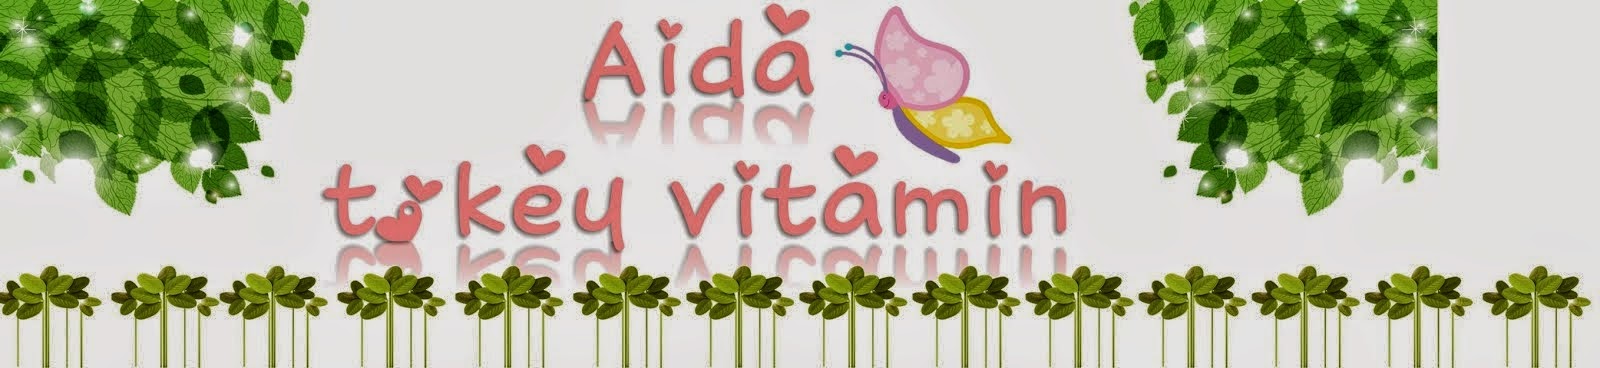 Aida Tokey Vitamin